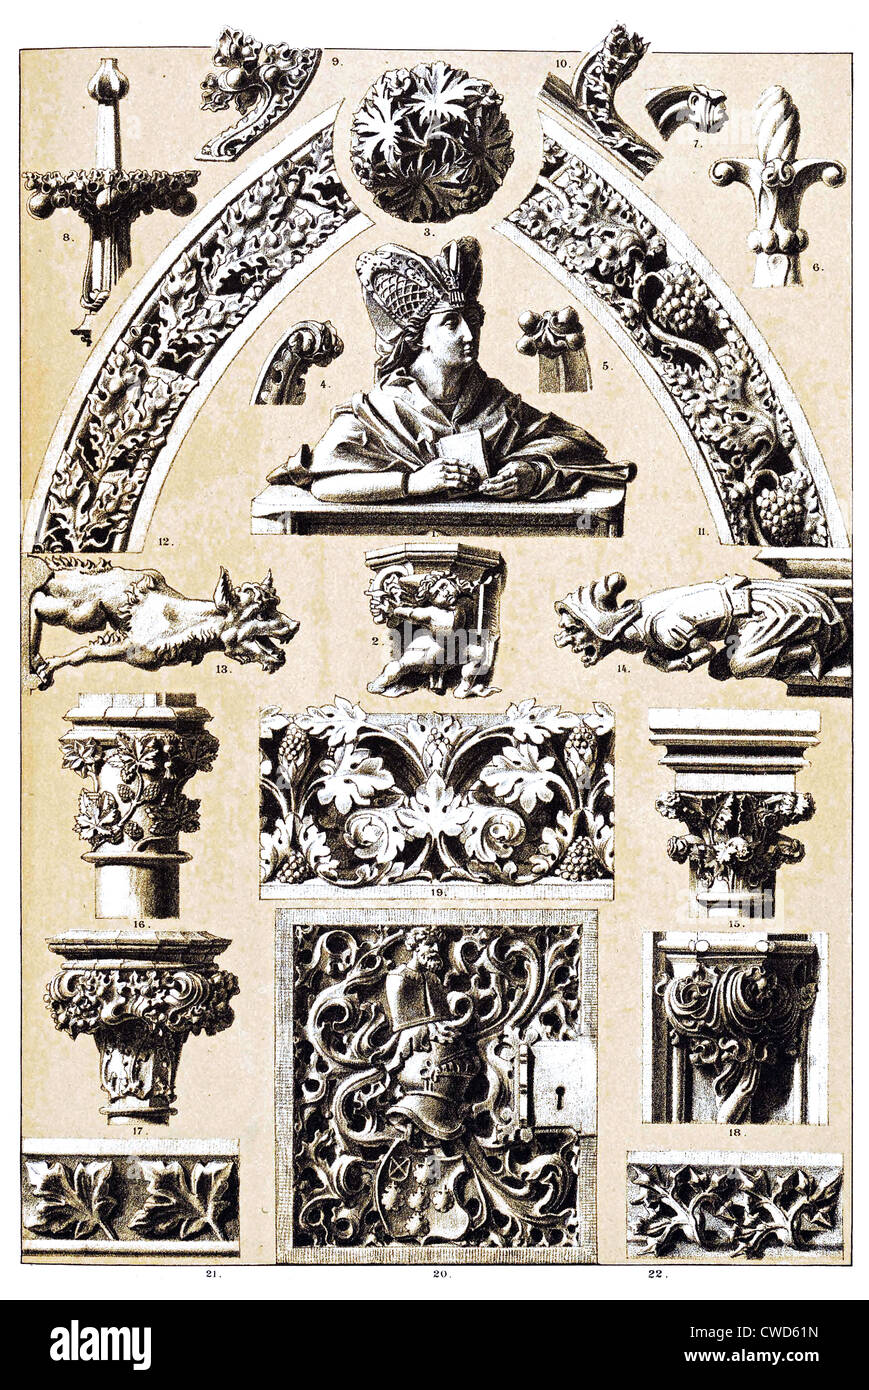 La arquitectura gótica escultura y ornamentación Foto de stock